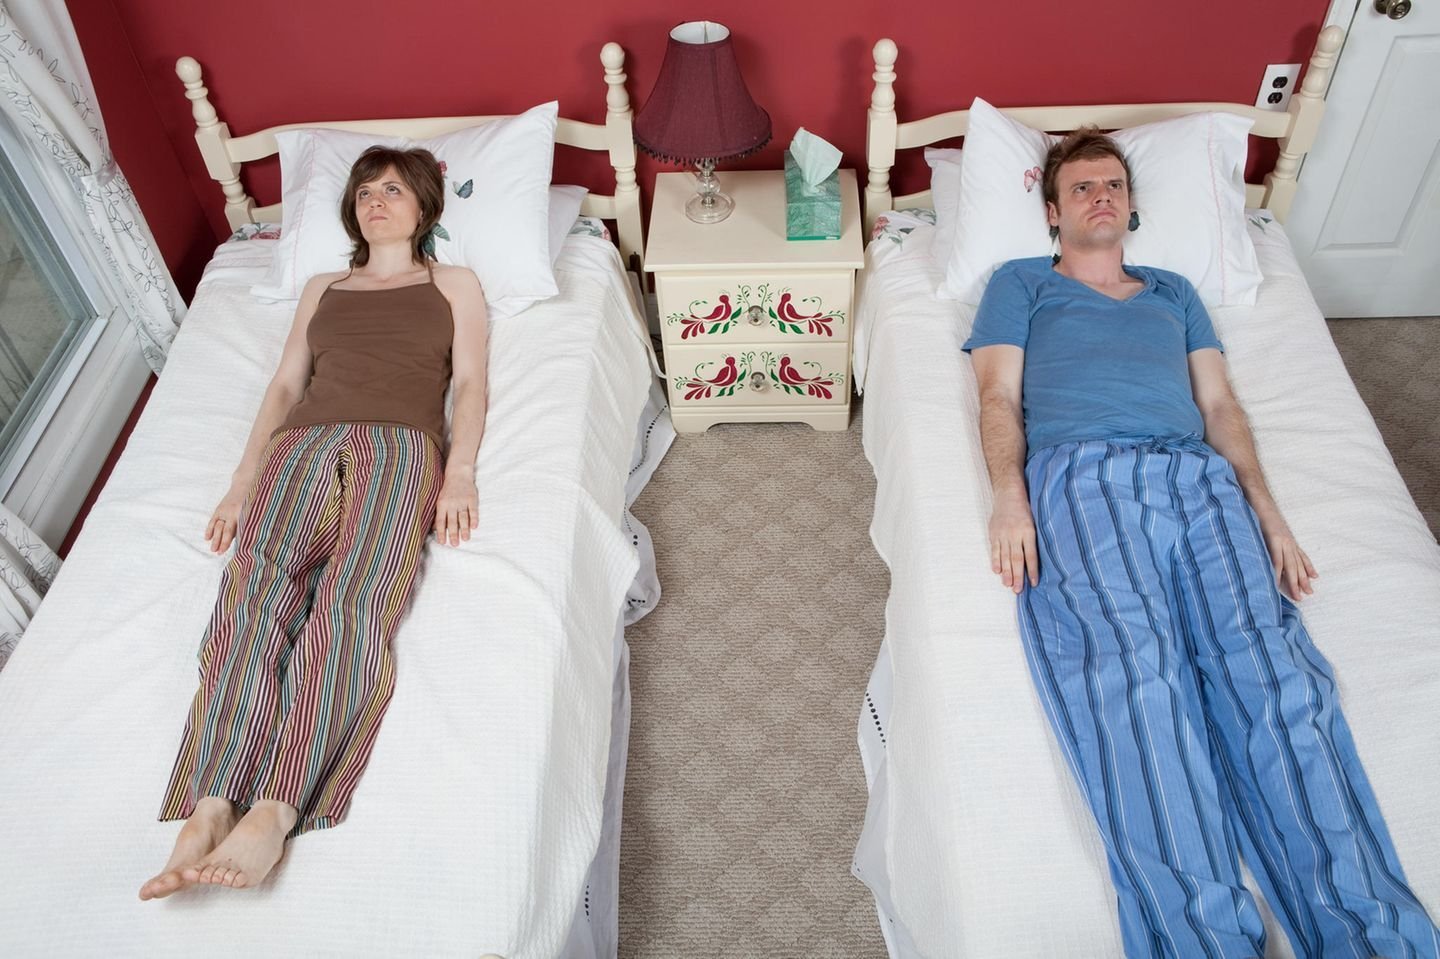 Спим после развода. Сон в разных кроватях. Раздельный сон. Муж и жена спят раздельно. Супружеский раздельный сон в разных кроватях.